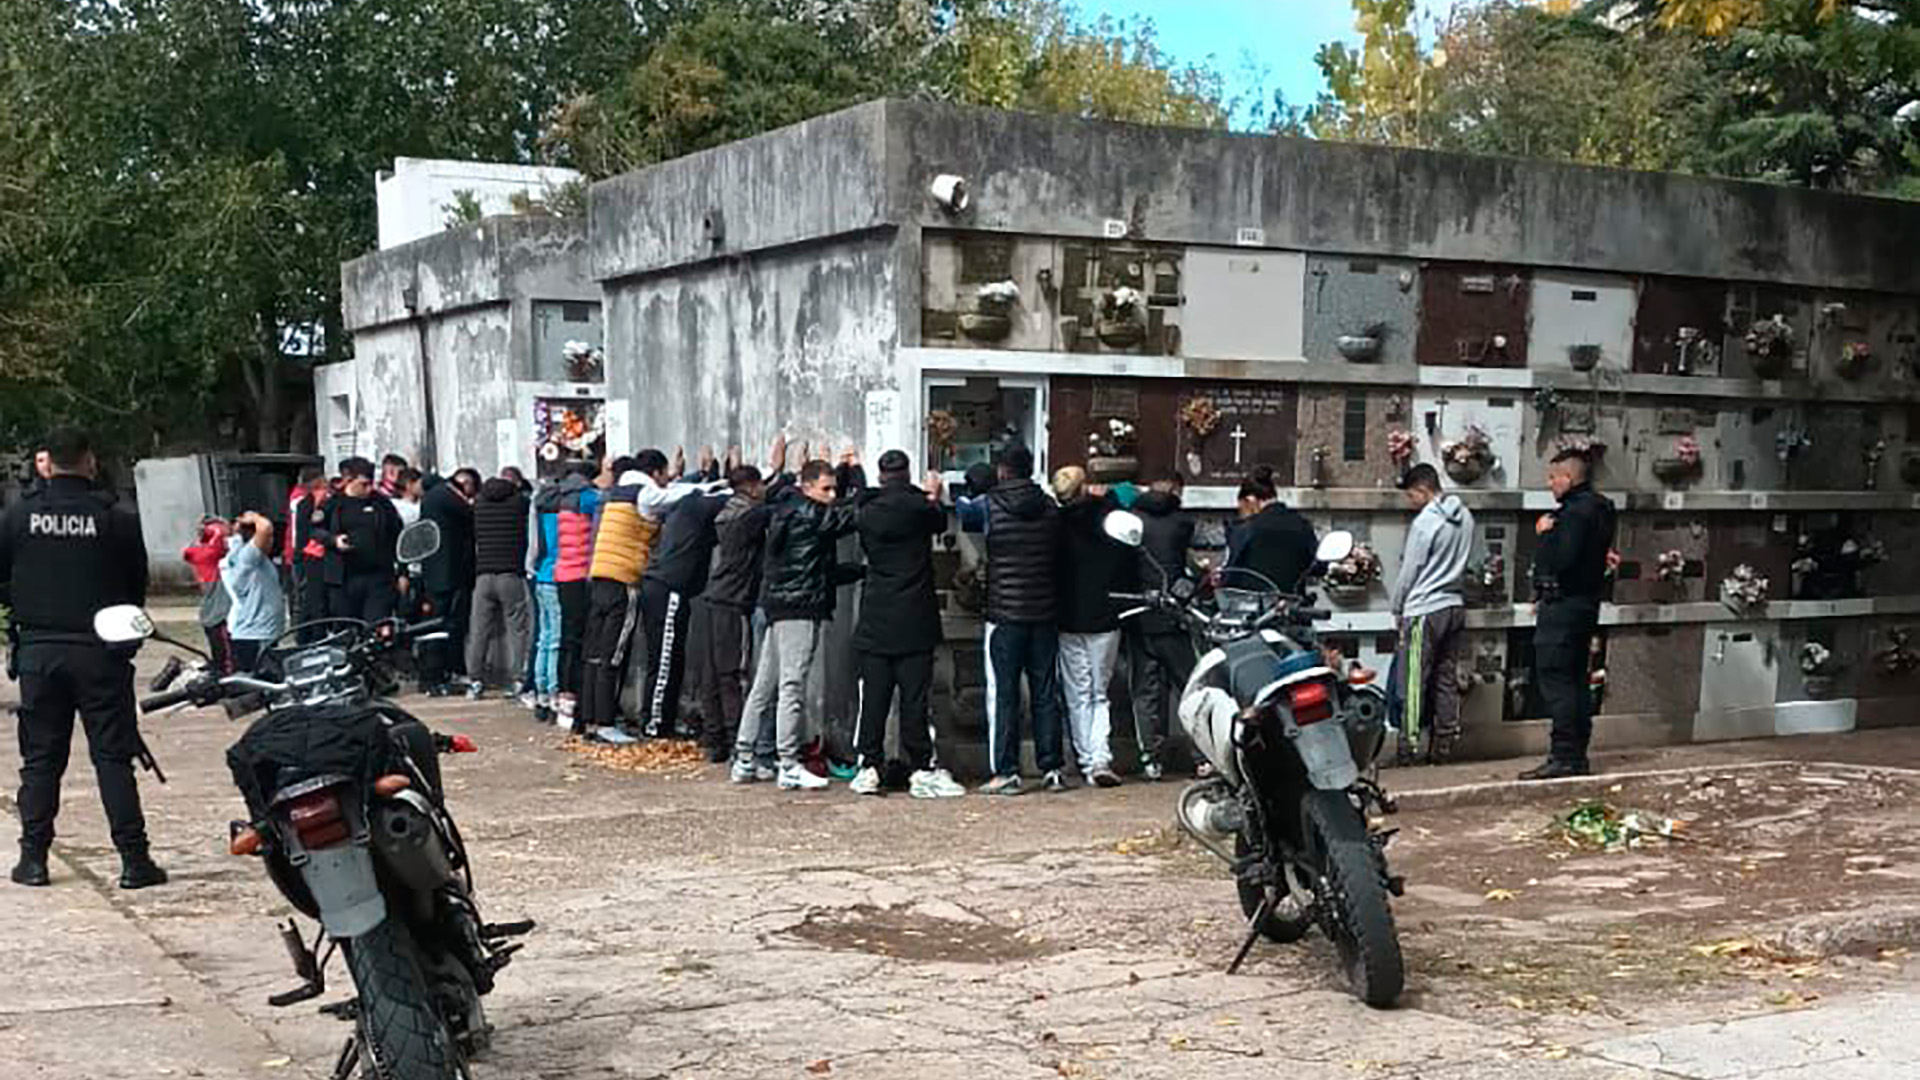 Insólito: motochorros se reunieron en un cementerio para recordar a un amigo muerto y fueron detenidos